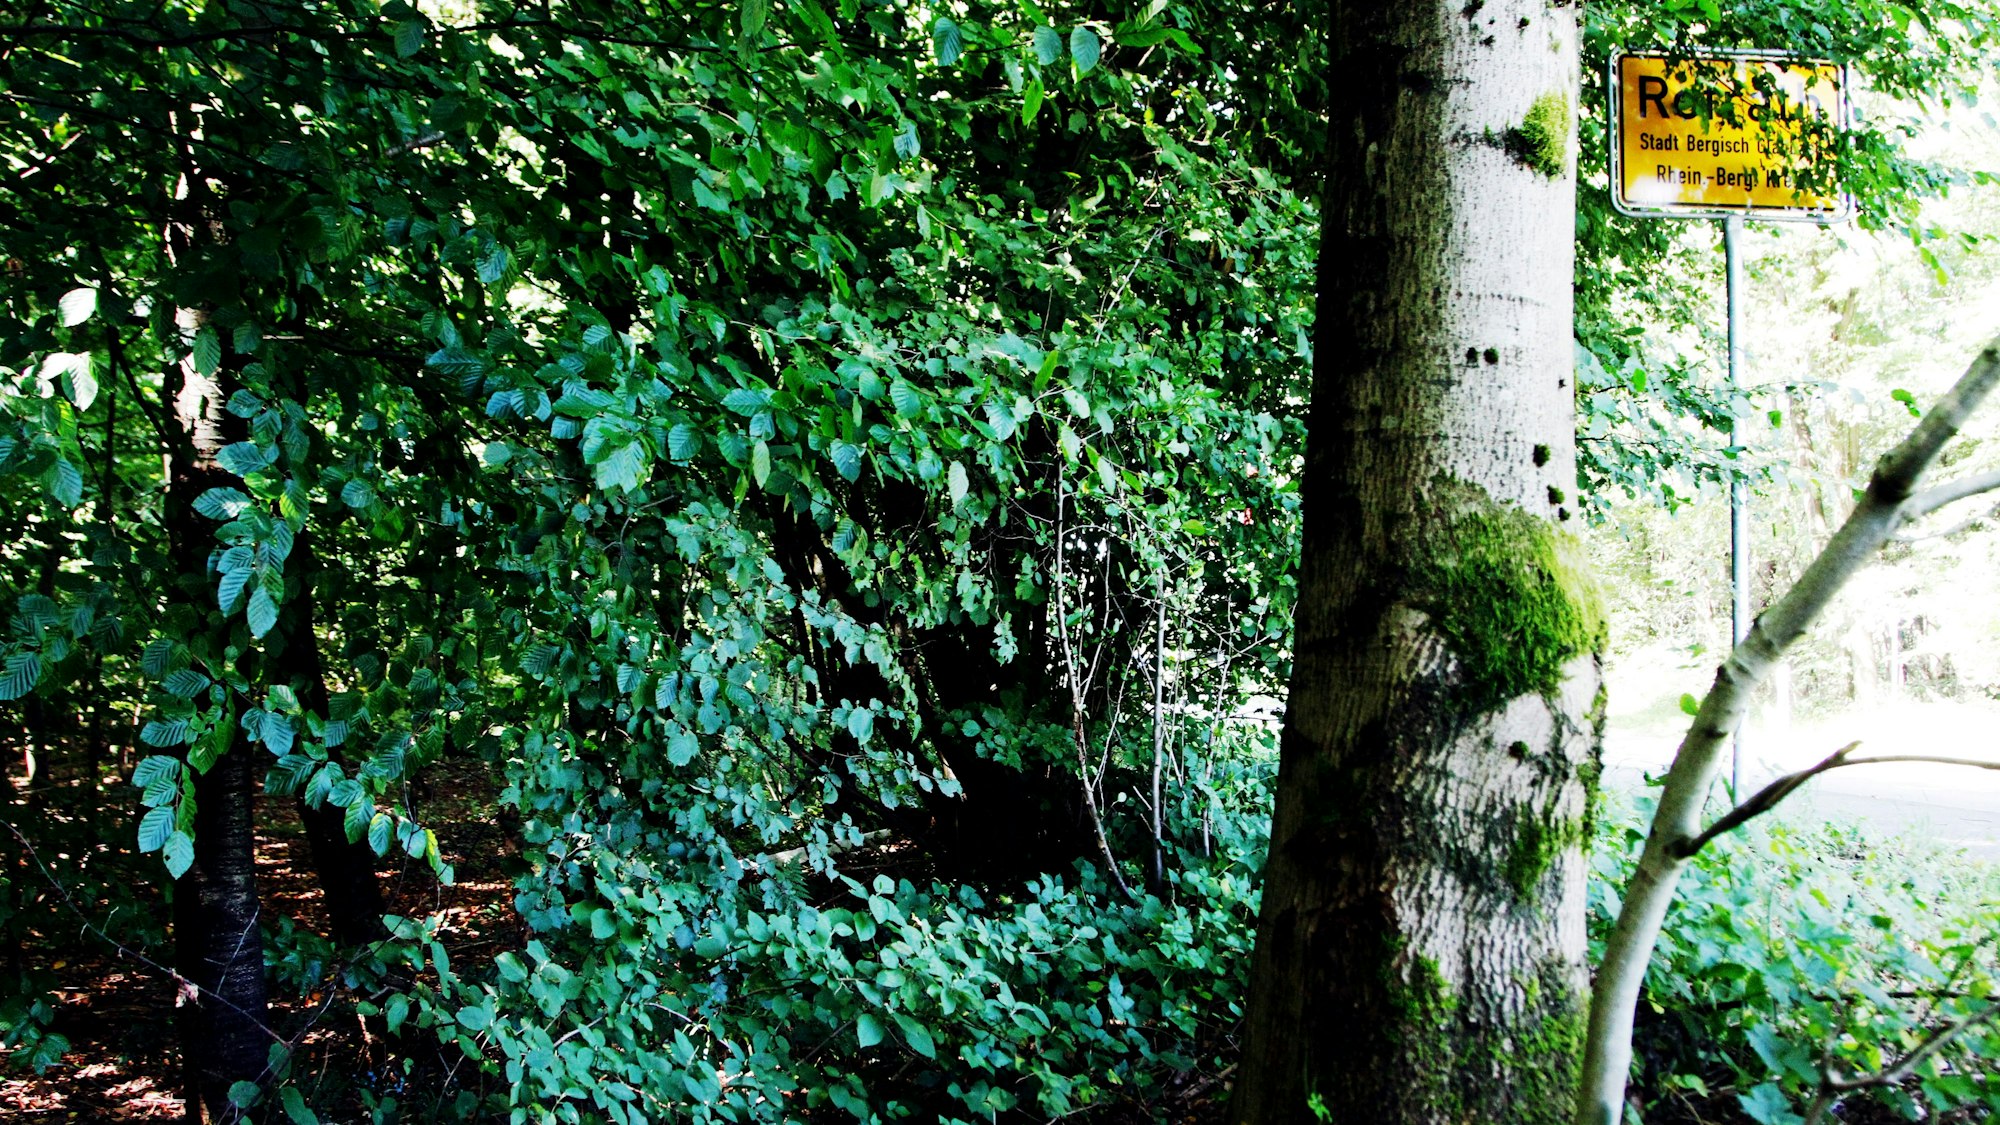 Der Tatort am Bens­ber­ger See heute: Dichtes Gestrüpp und ein Baum neben dem Ortseingangsschild von Refrath